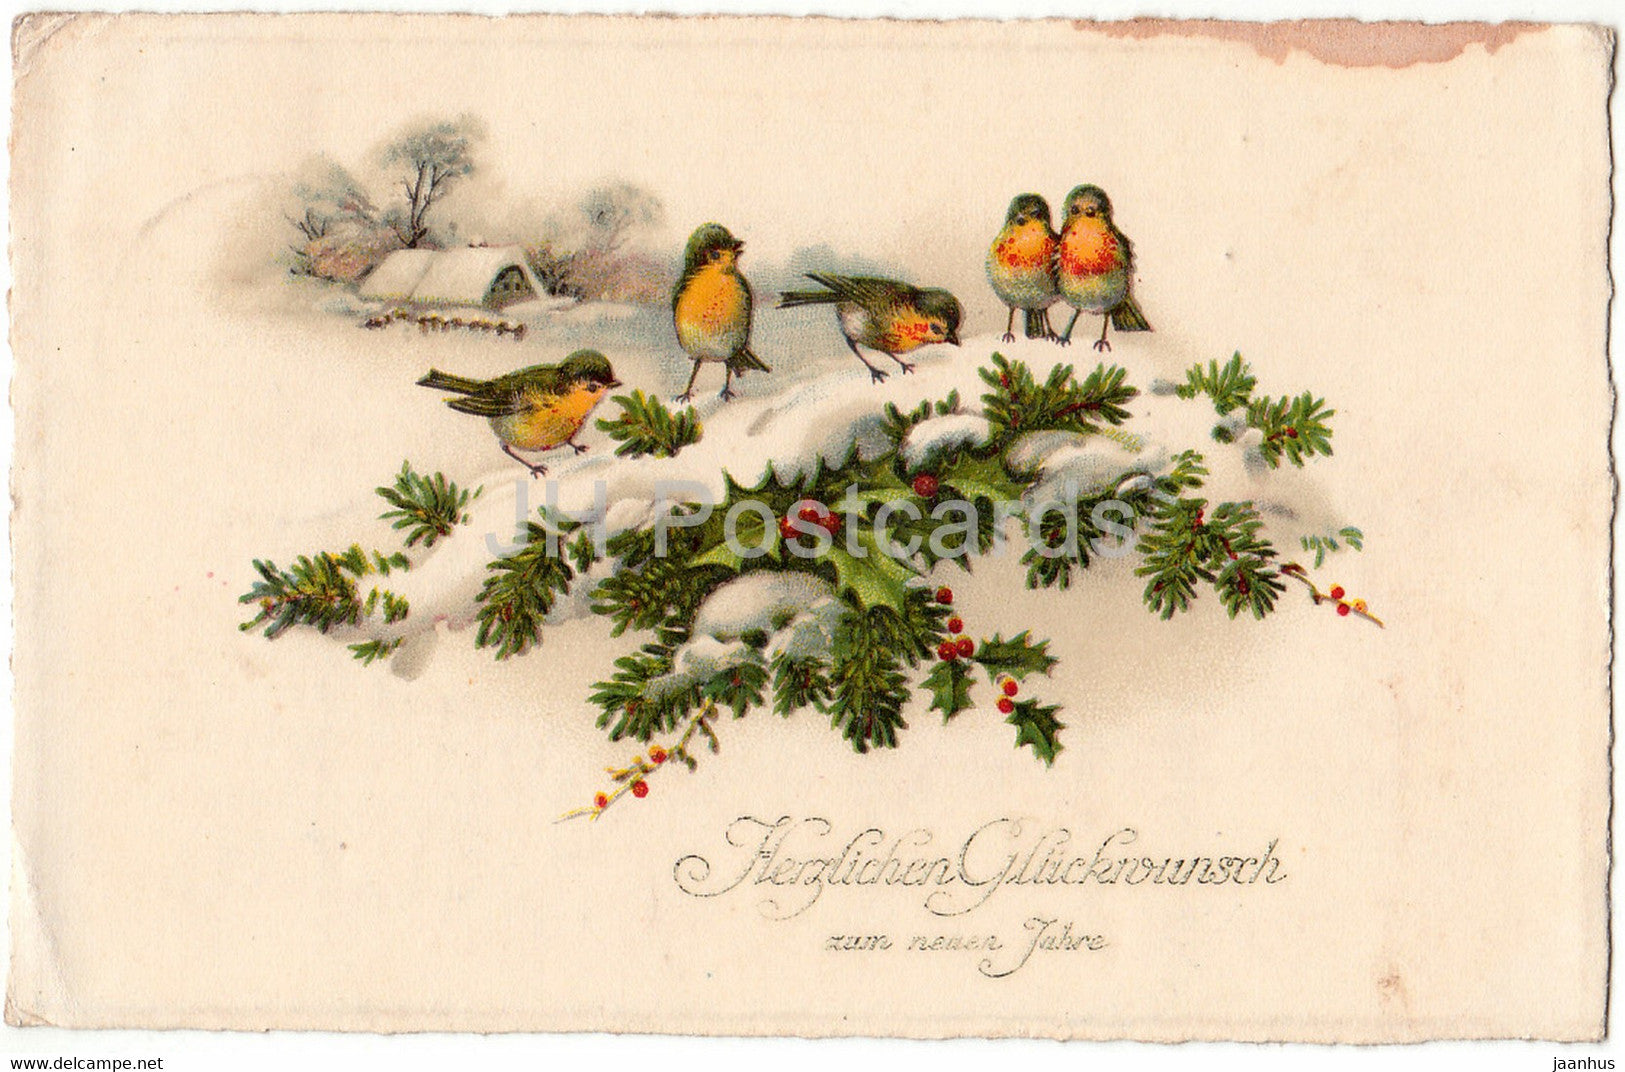 New Year Greeting Card - Herzlichen Gluckwunsch zum neuen Jahre - birds - Erika - old postcard - Germany - used - JH Postcards